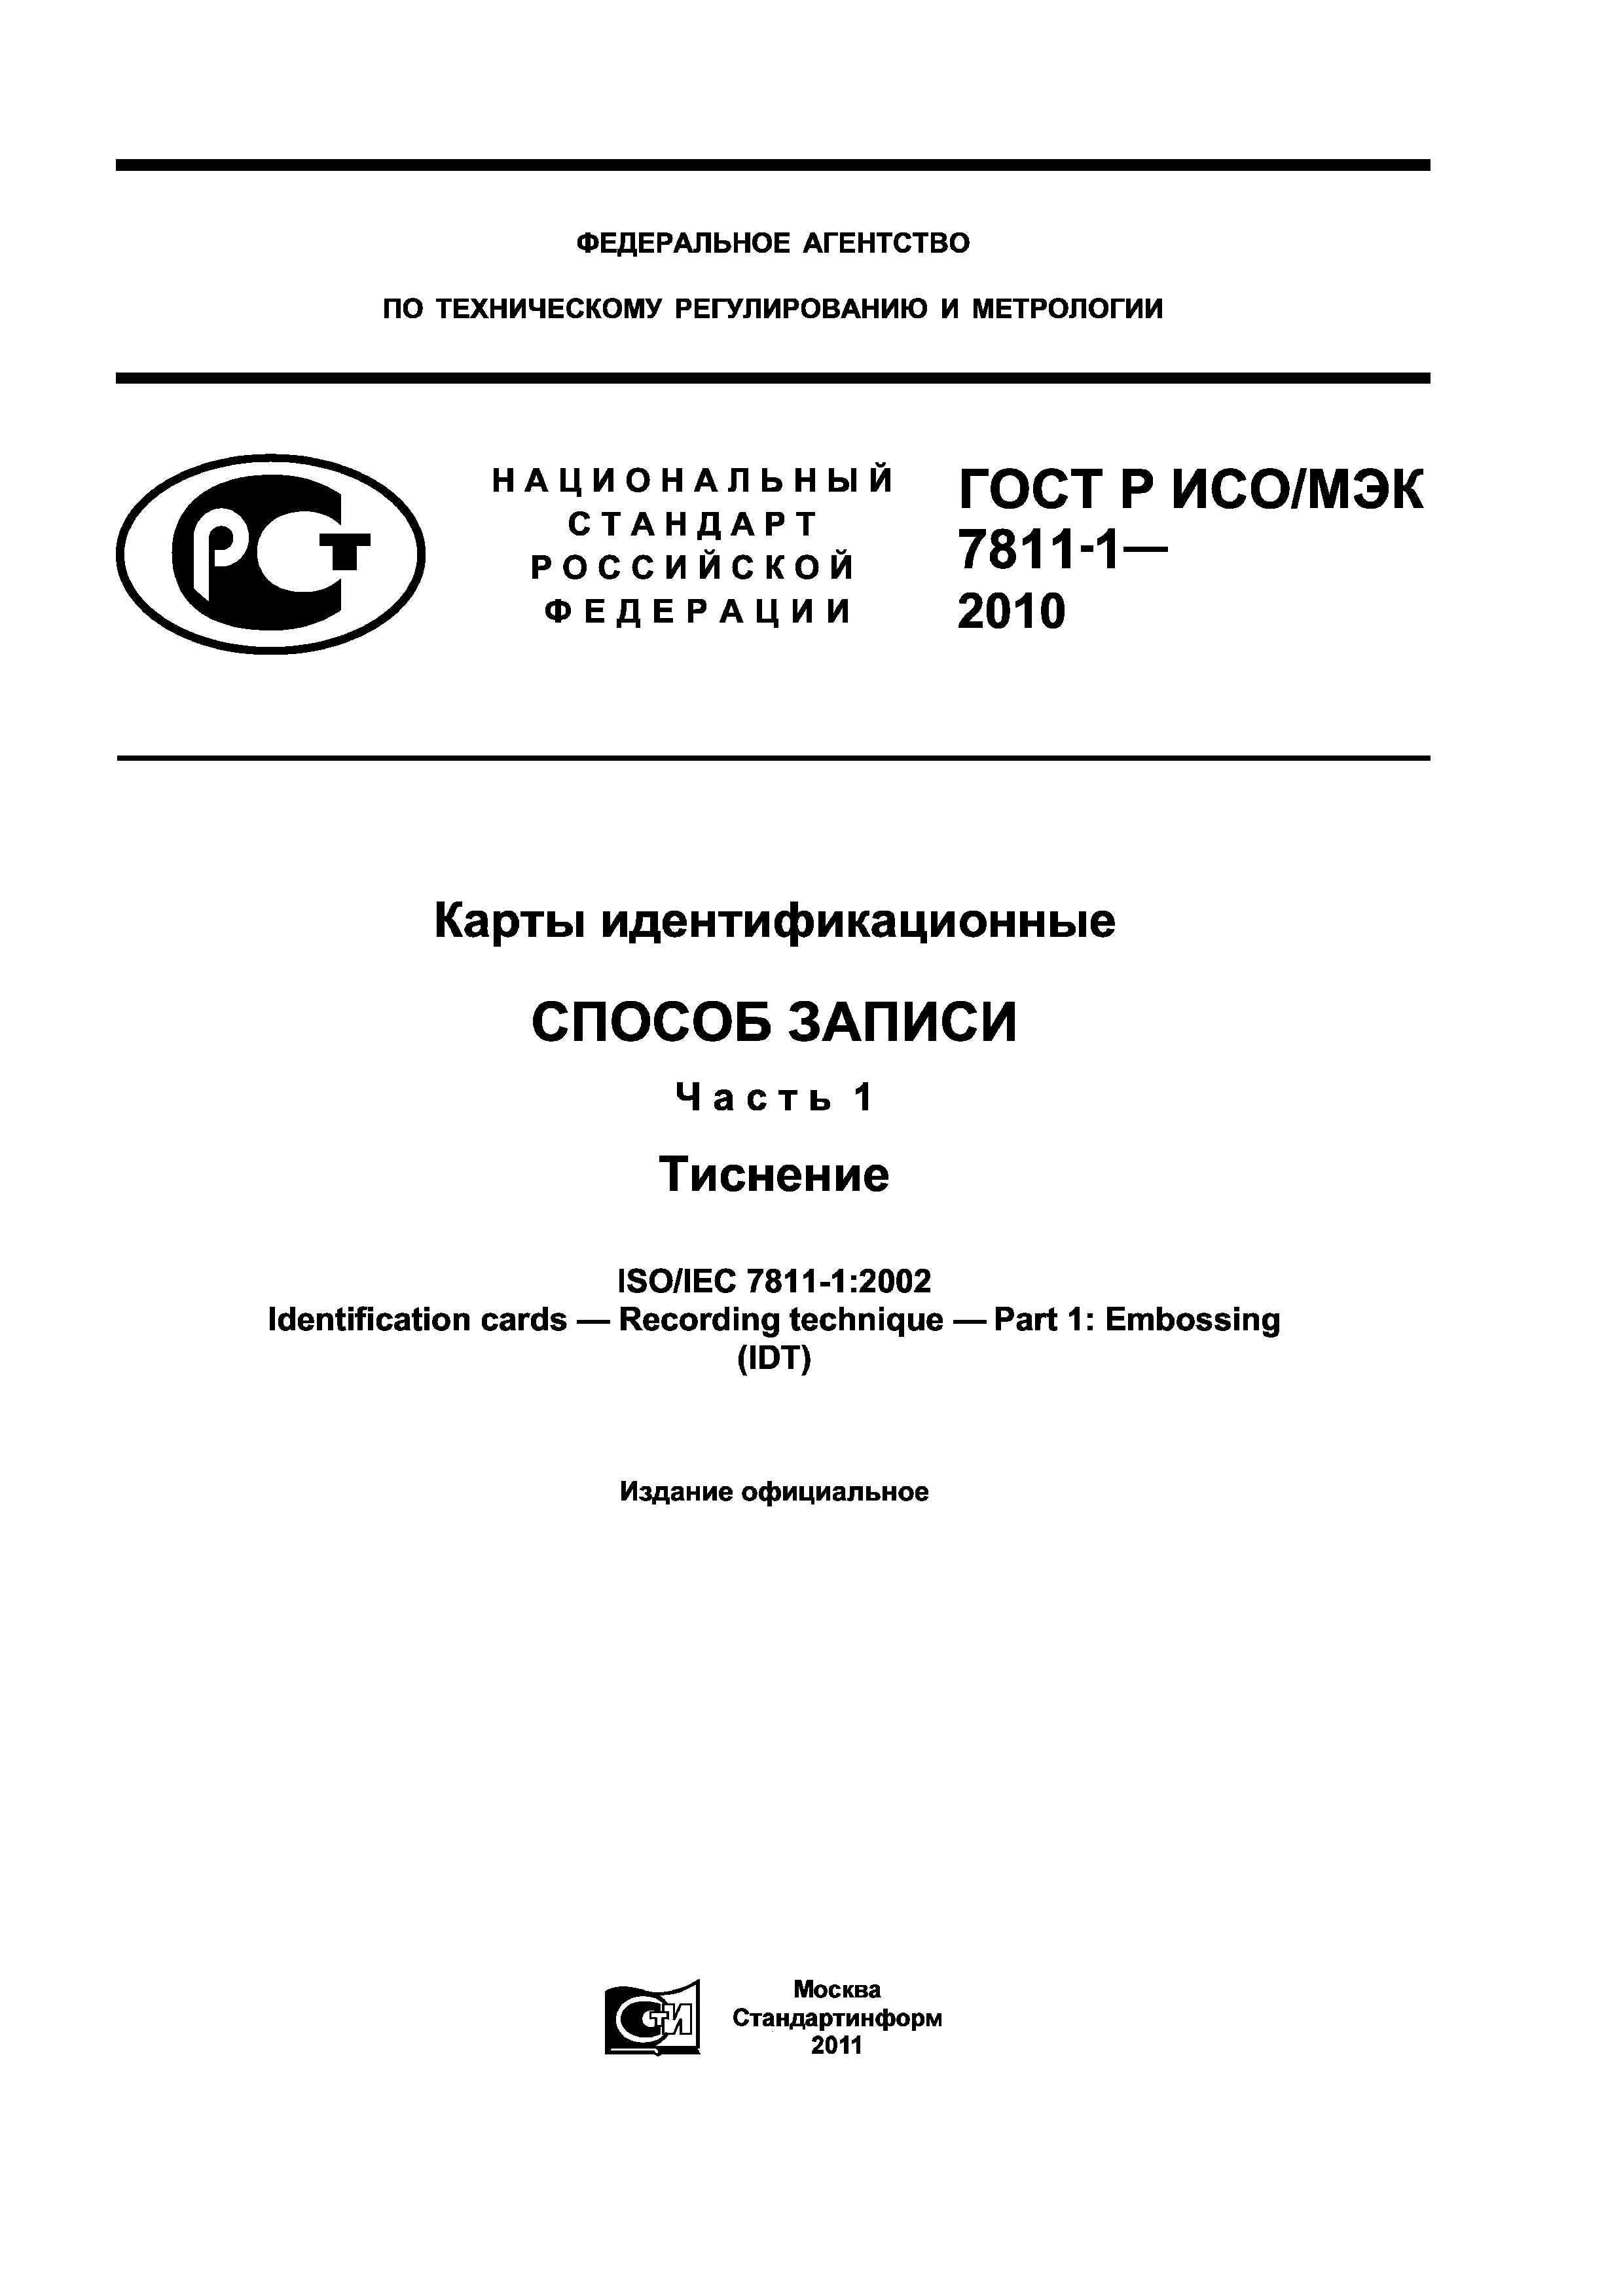 ГОСТ Р ИСО/МЭК 7811-1-2010